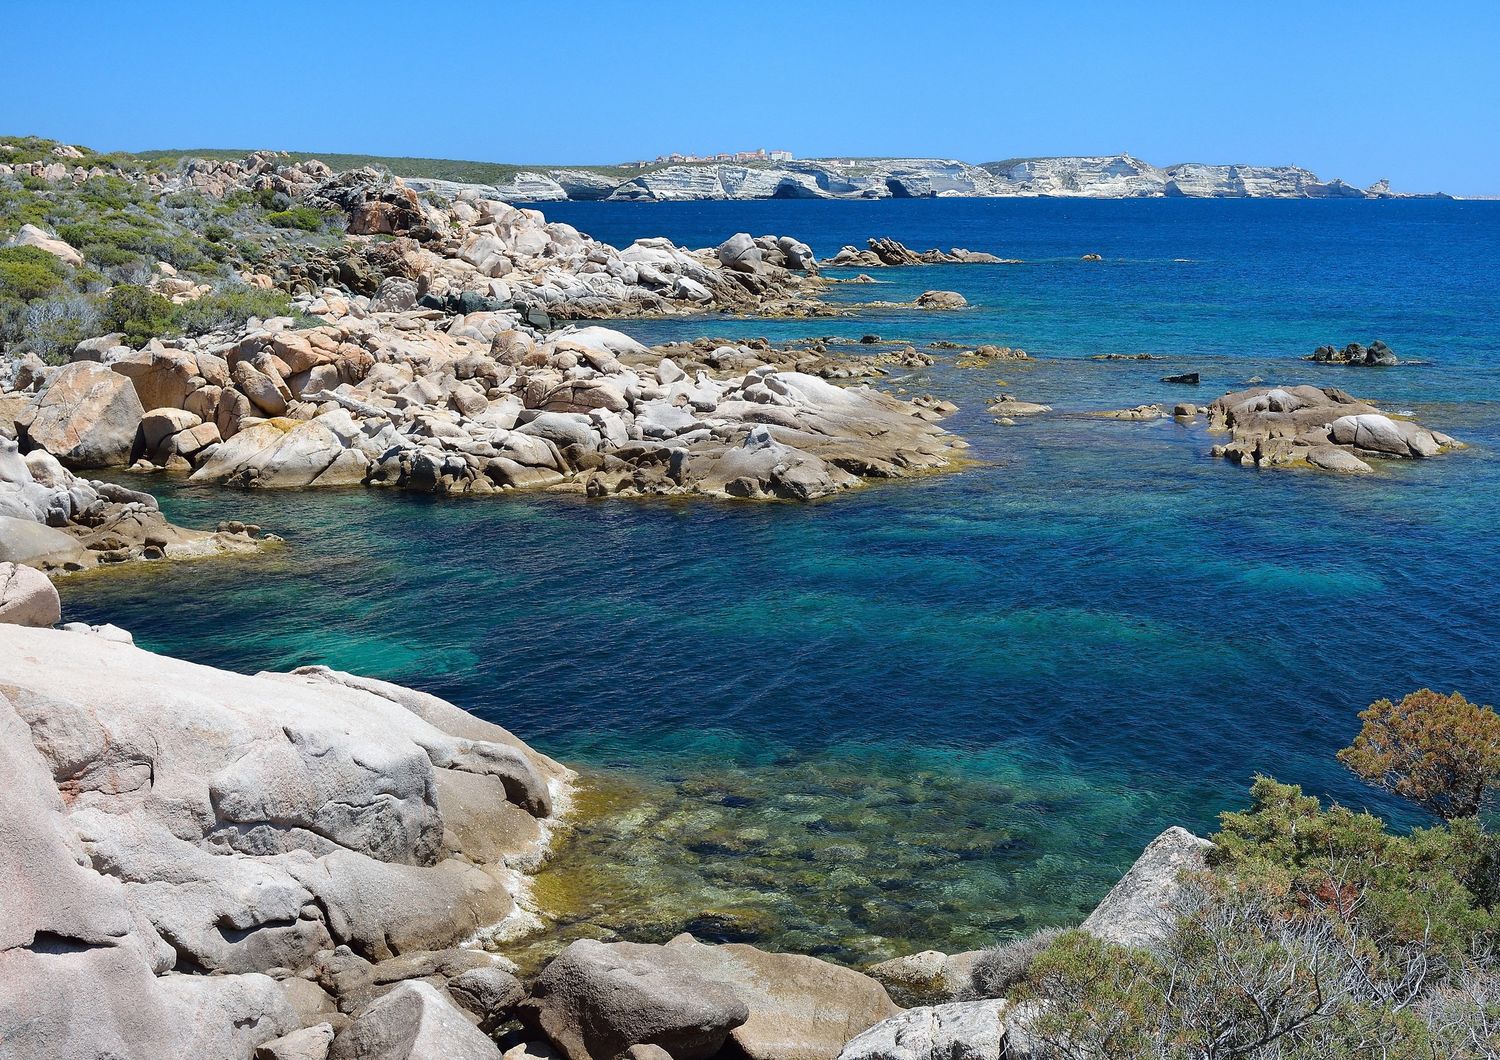 L'area protetta di Bonifacio, in Corsica